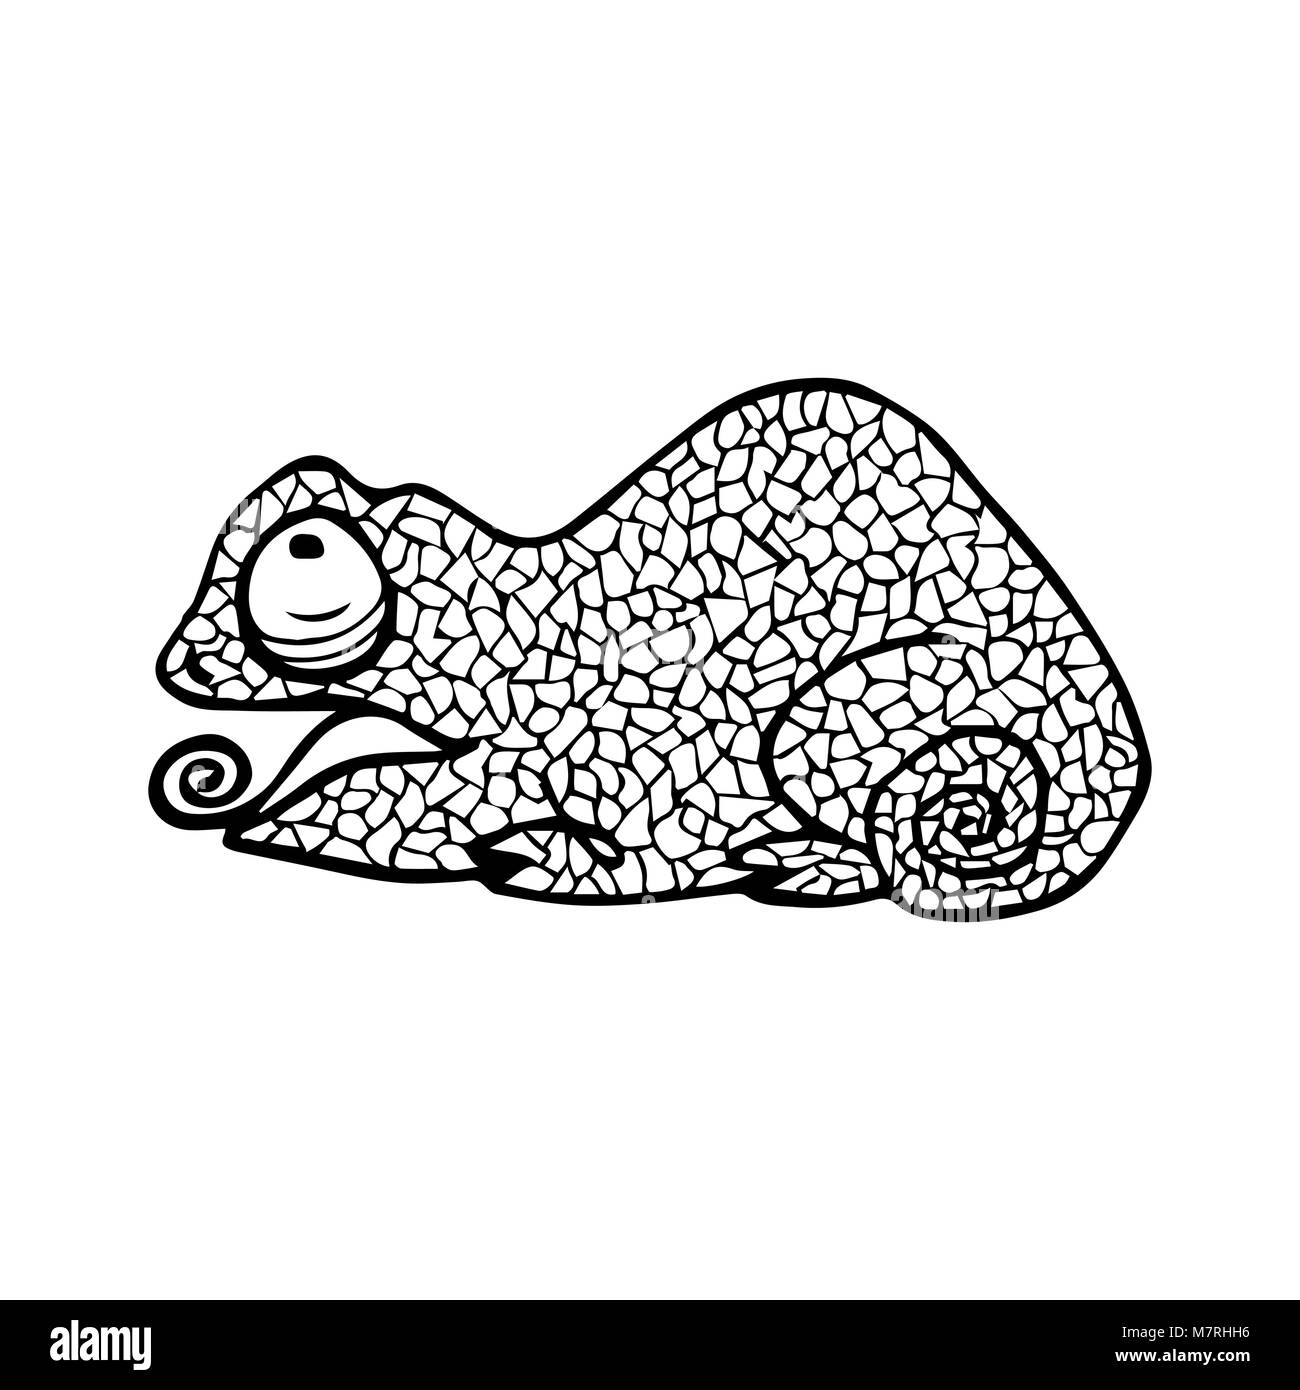 Illustrazione Vettoriale di Chameleon con doodle pattern. Pagina di colorazione - zendala, design per il relax per gli adulti Illustrazione Vettoriale